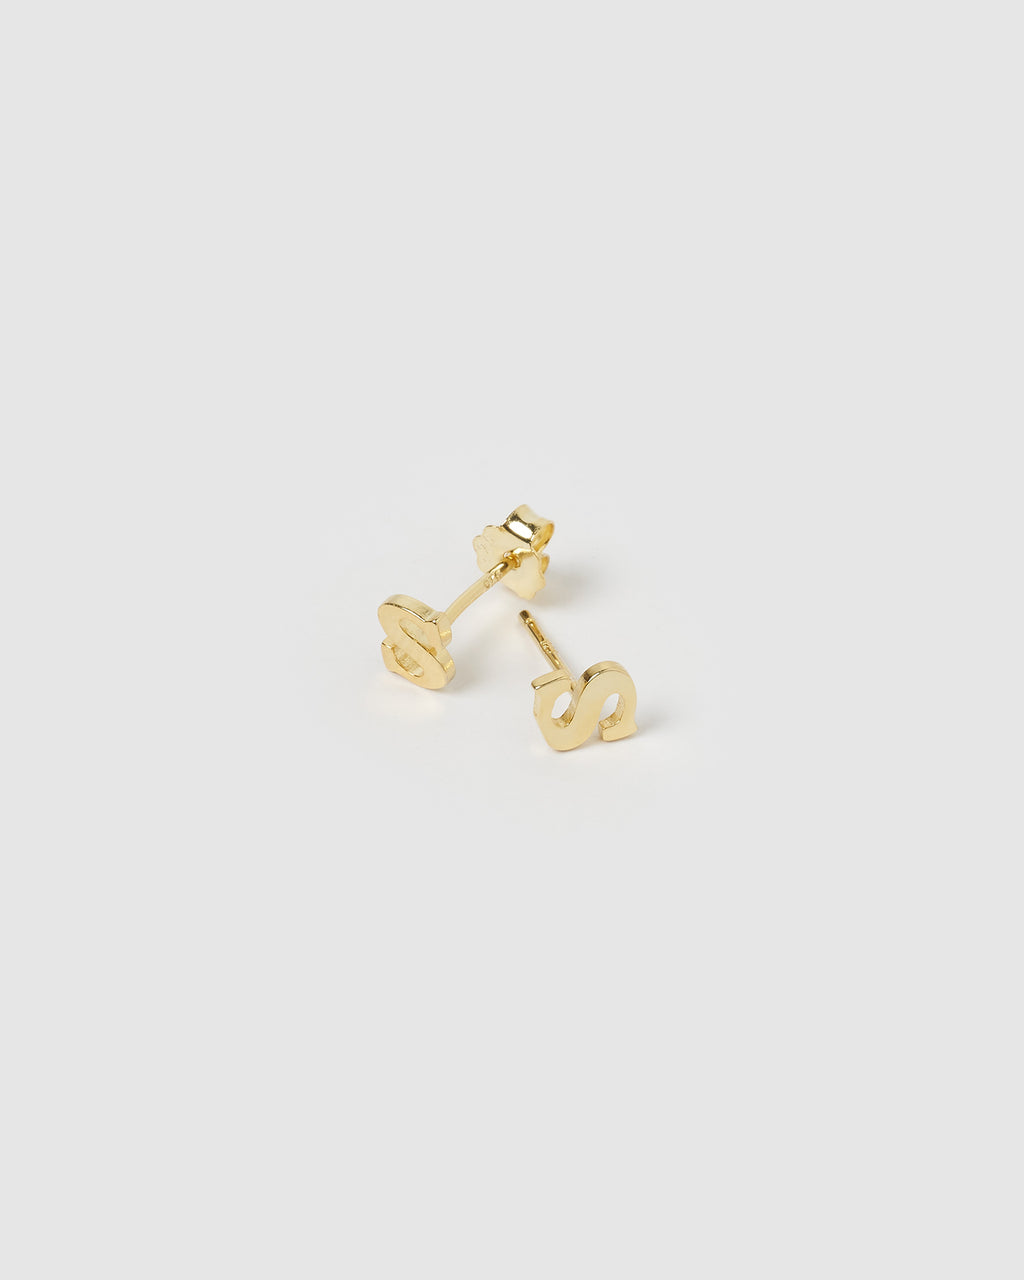 Izoa Little Letter S Stud Earrings Gold